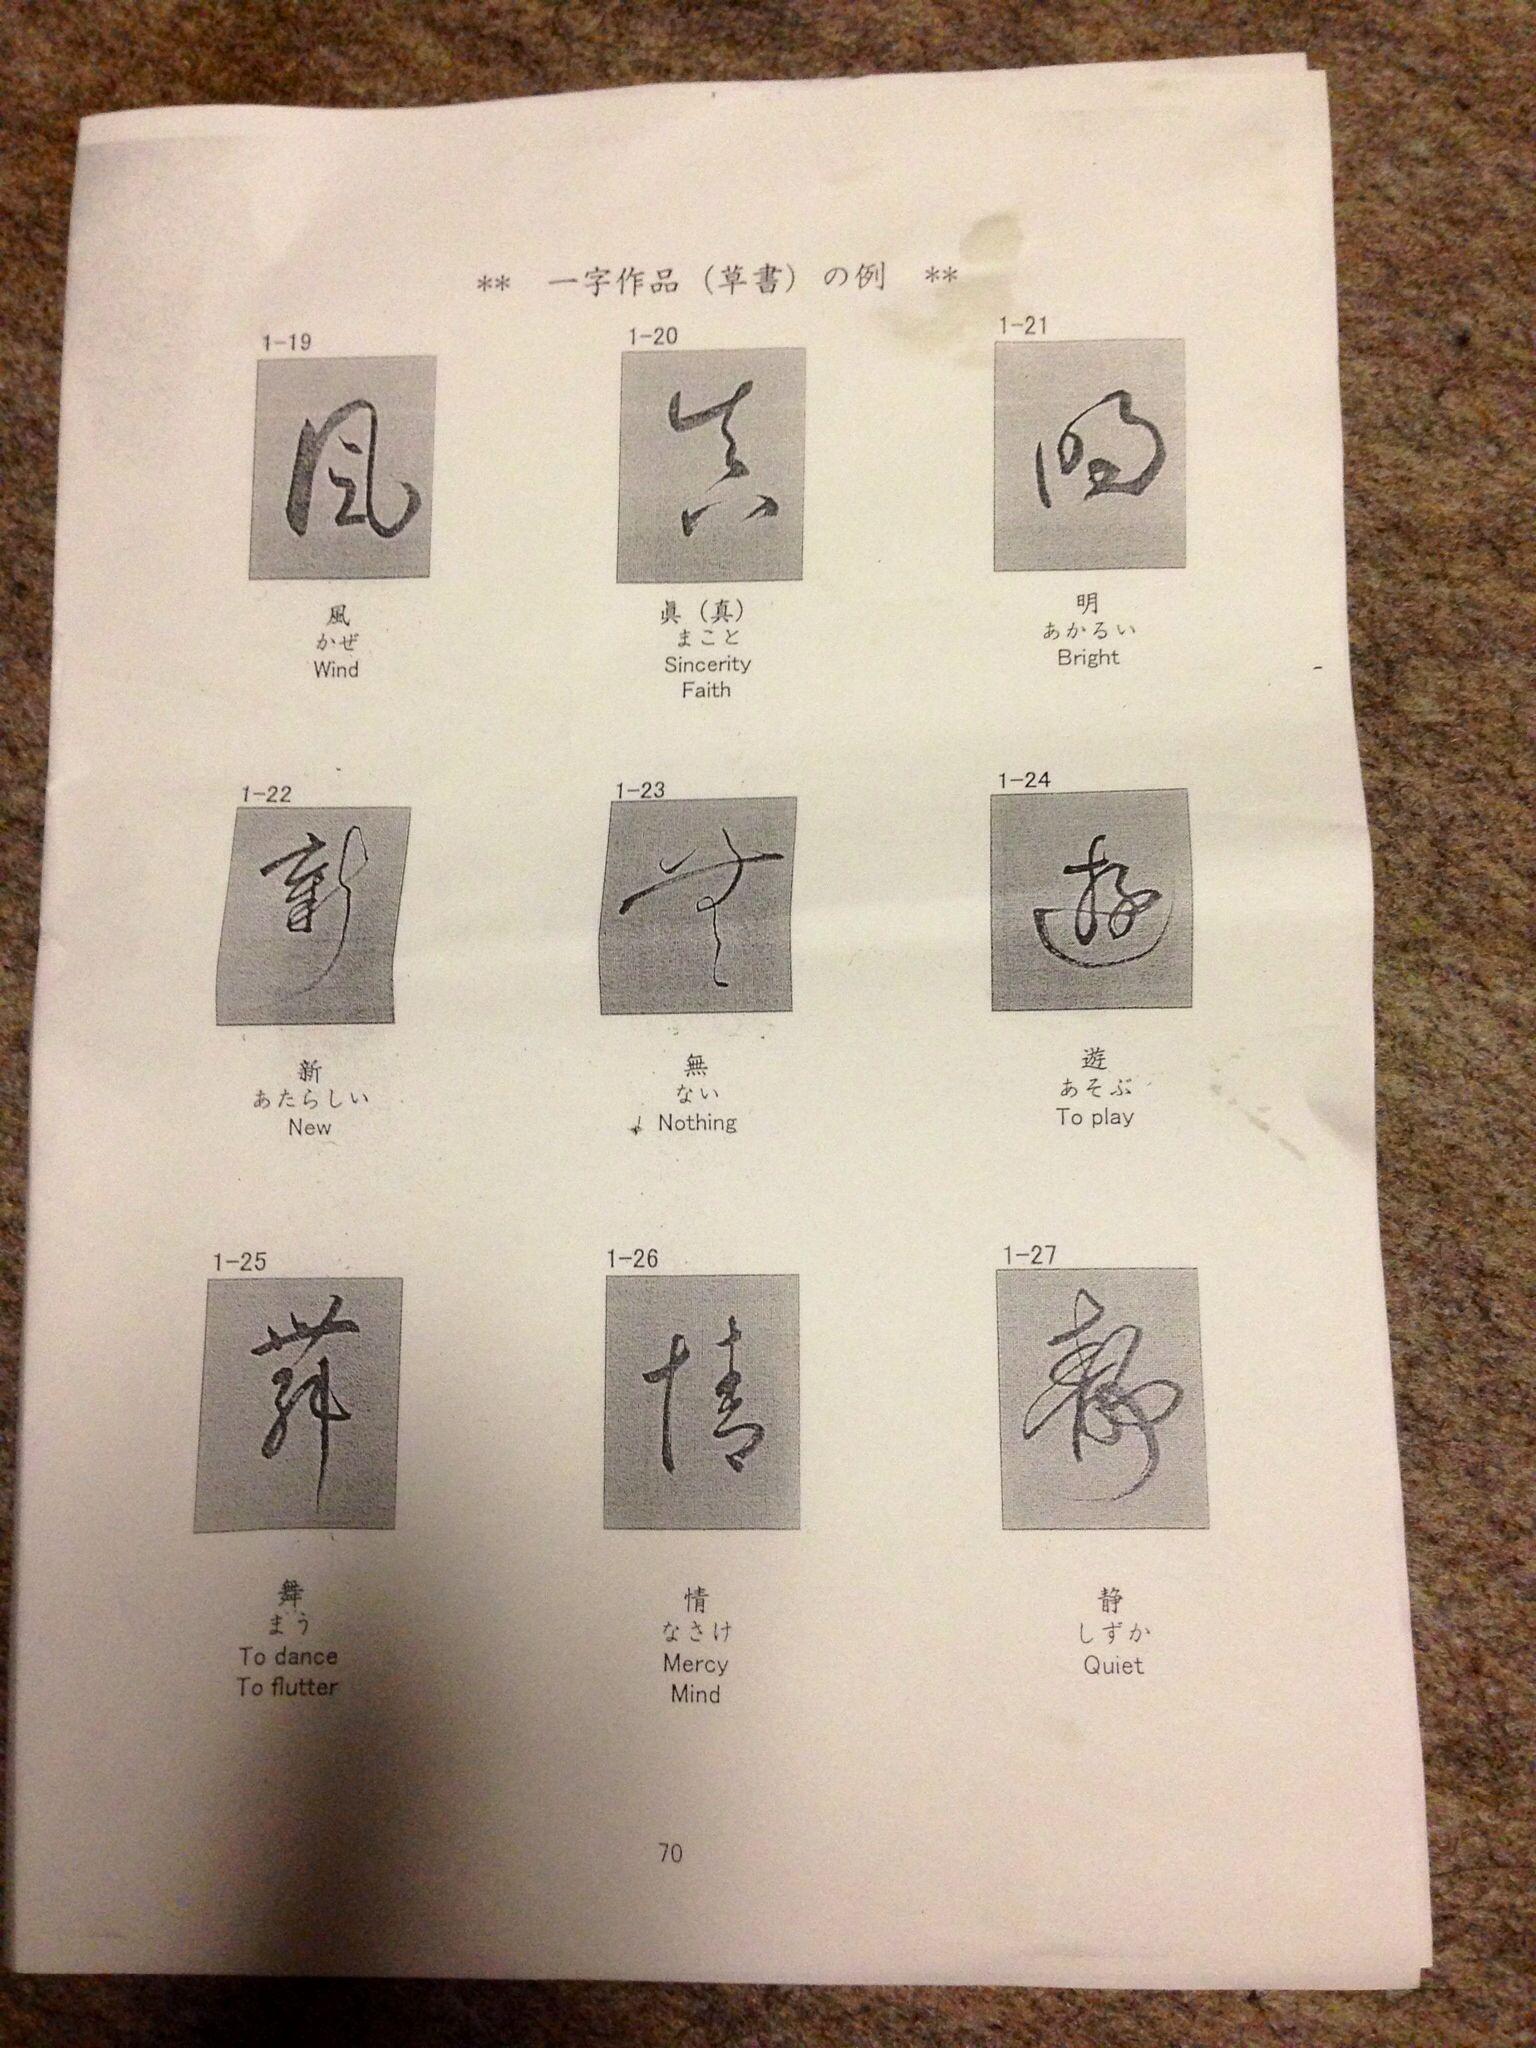 能否普及下日语的字体,以及怎样才能把日语写